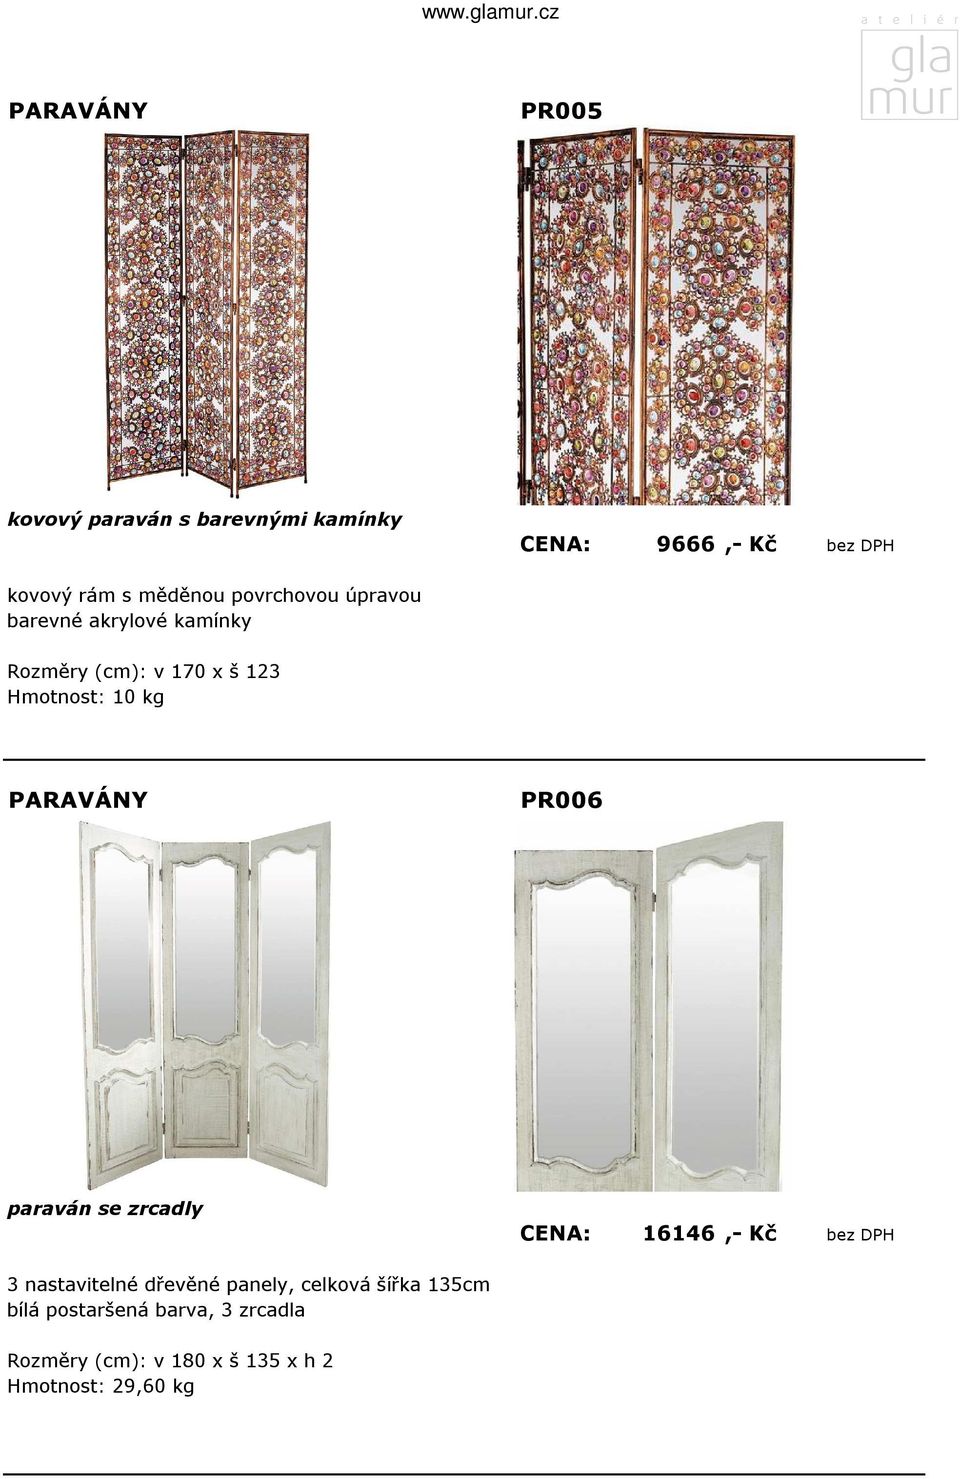 PR006 paraván se zrcadly CENA: 16146,- Kč bez DPH 3 nastavitelné dřevěné panely, celková